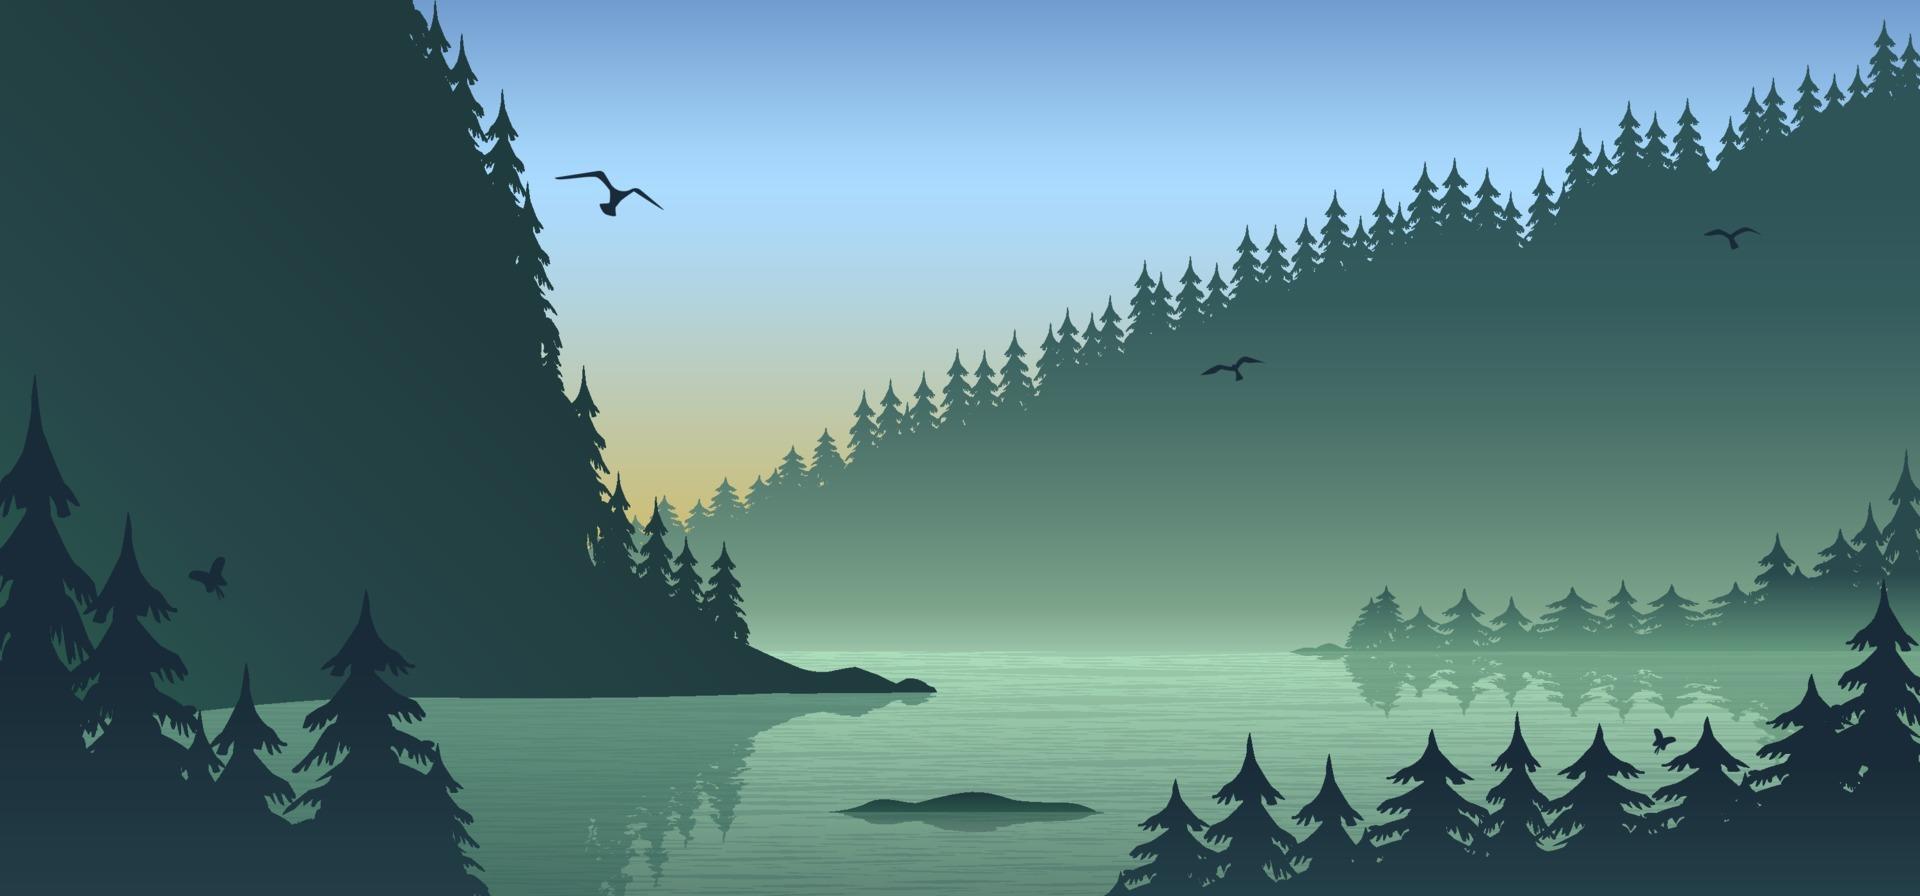 paysage forestier silhouette, design plat avec dégradé, fond illustration vectorielle vecteur